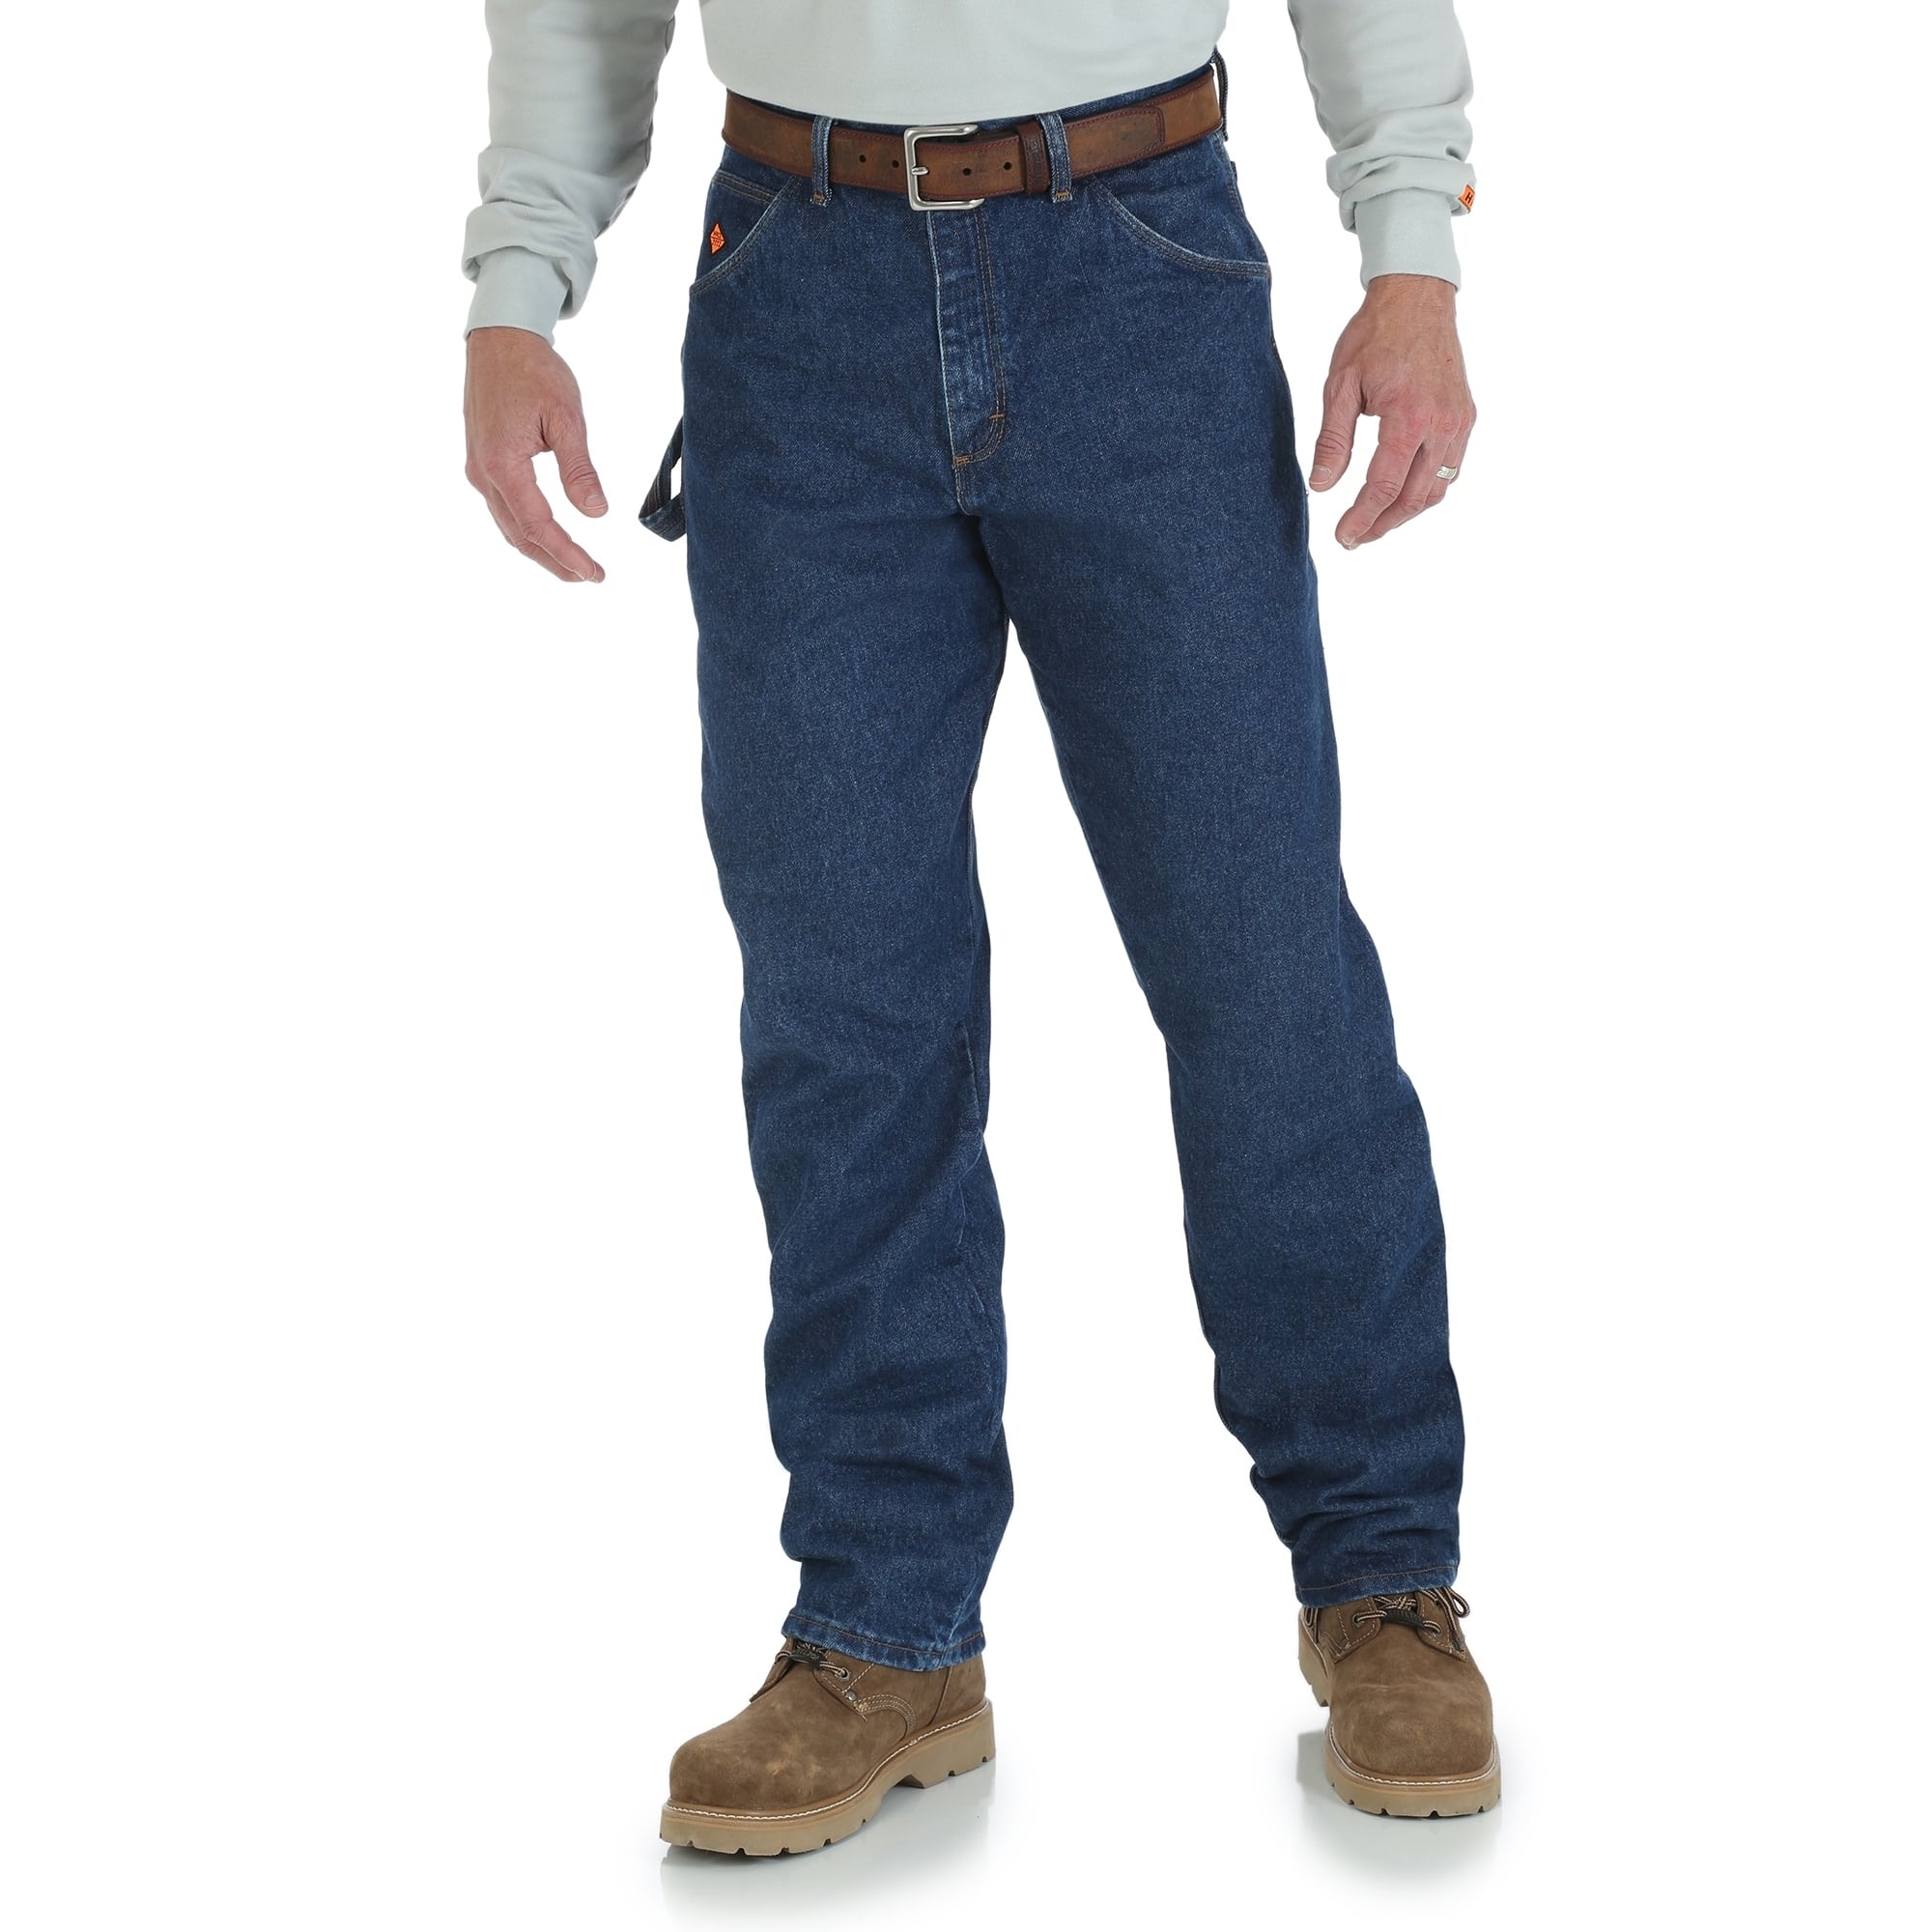 Wrangler Men's Flame Resistant Carpenter Jeans Pant Size 58 x 30 | Cotton